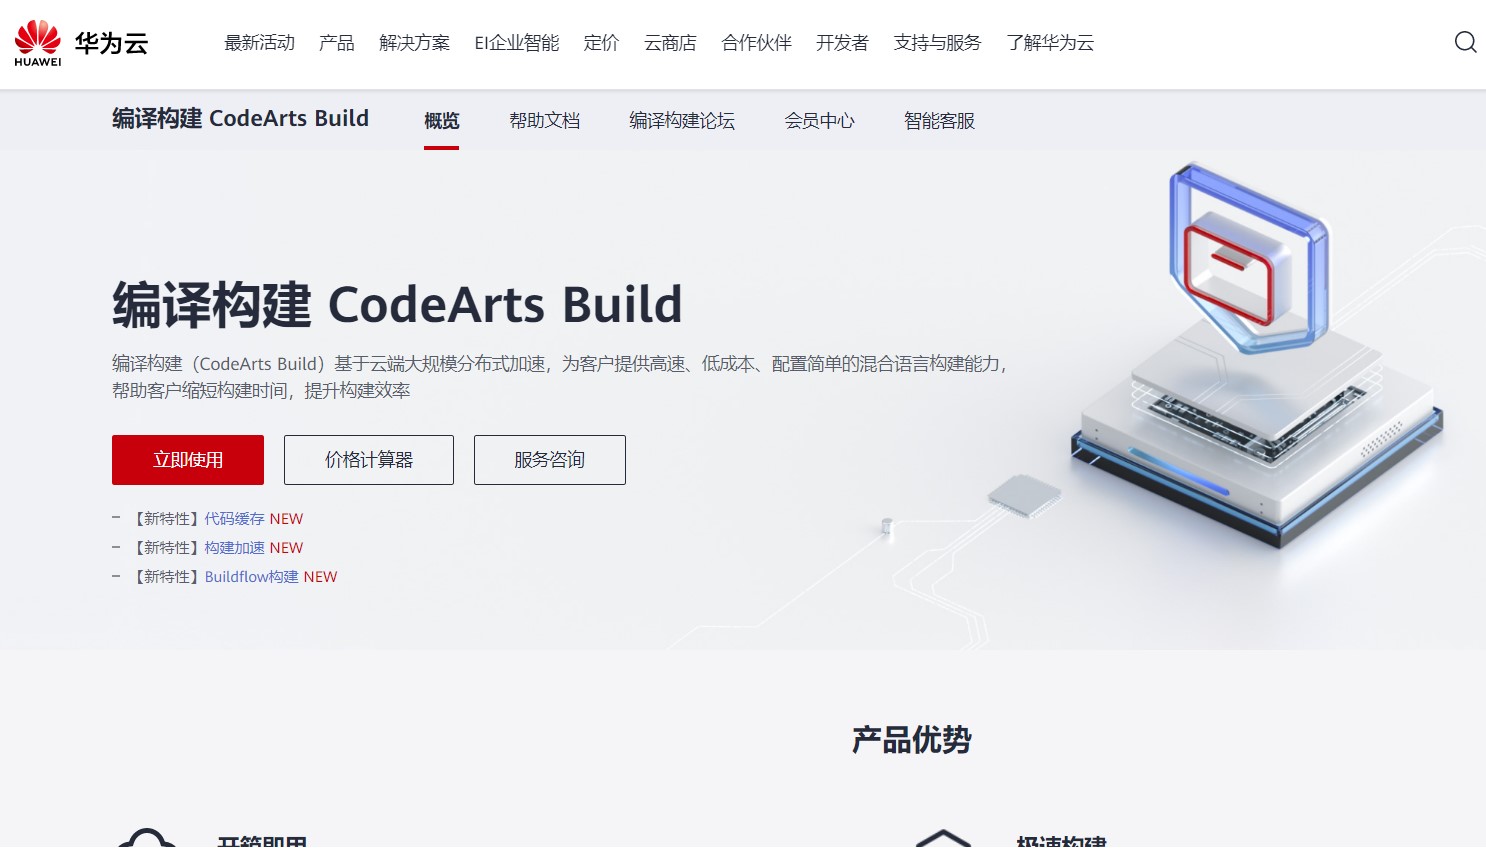 Huawei CodeArts Build